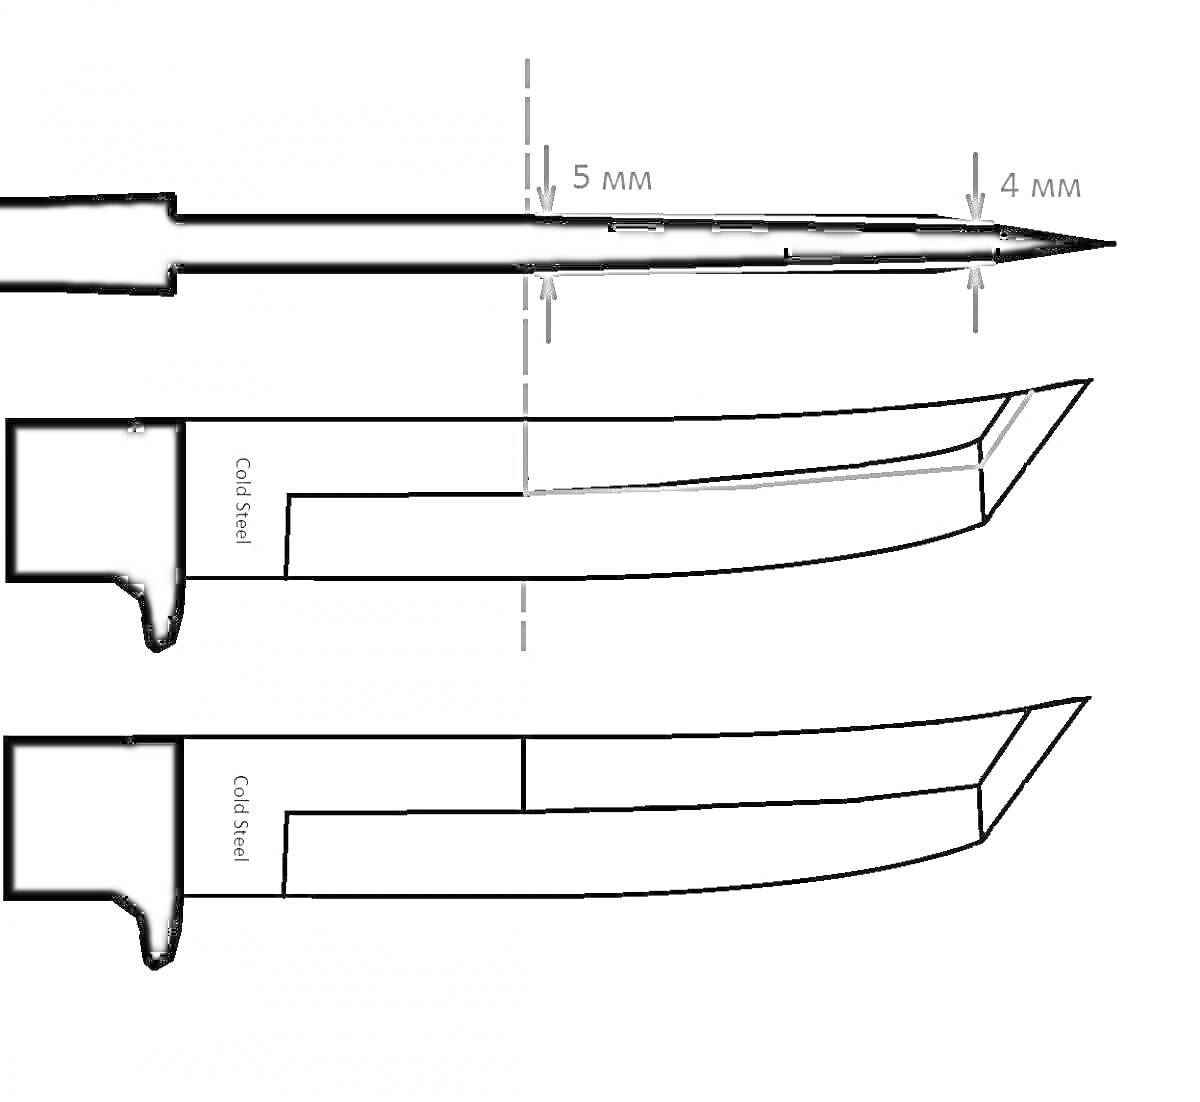 Раскраска Изображения ножа танто с боковыми видами лезвия и вида лезвия сверху, обозначениями толщины лезвия (5 мм и 4 мм) и осевой меткой.